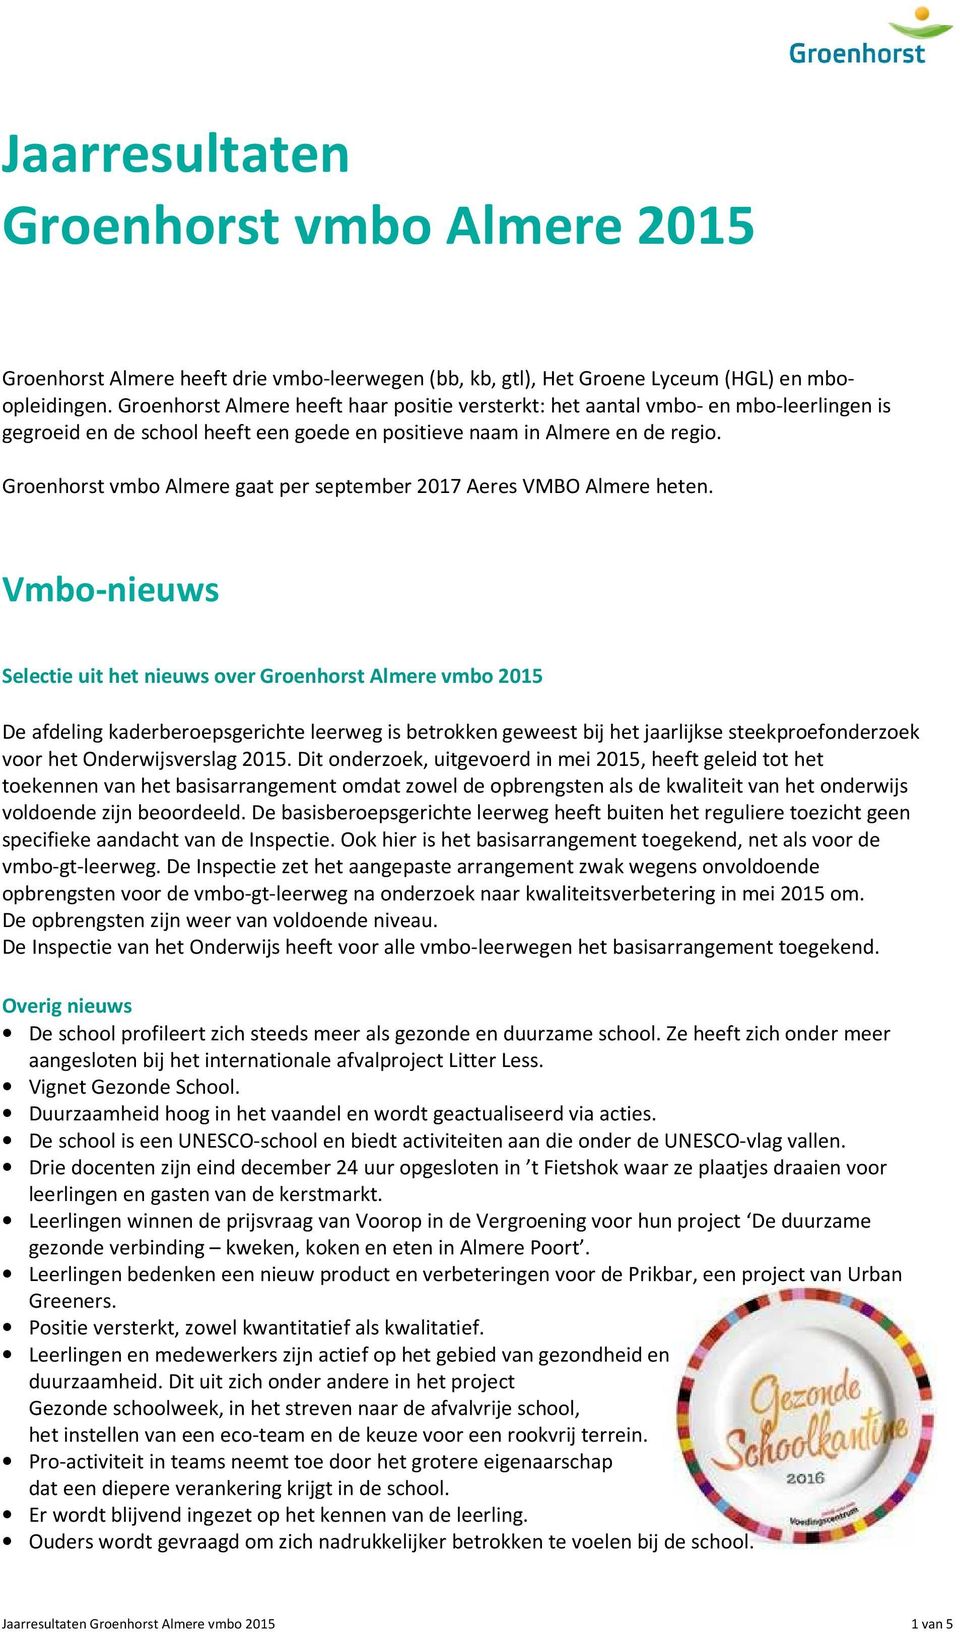 Groenhorst vmbo Almere gaat per september 2017 Aeres VMBO Almere heten.